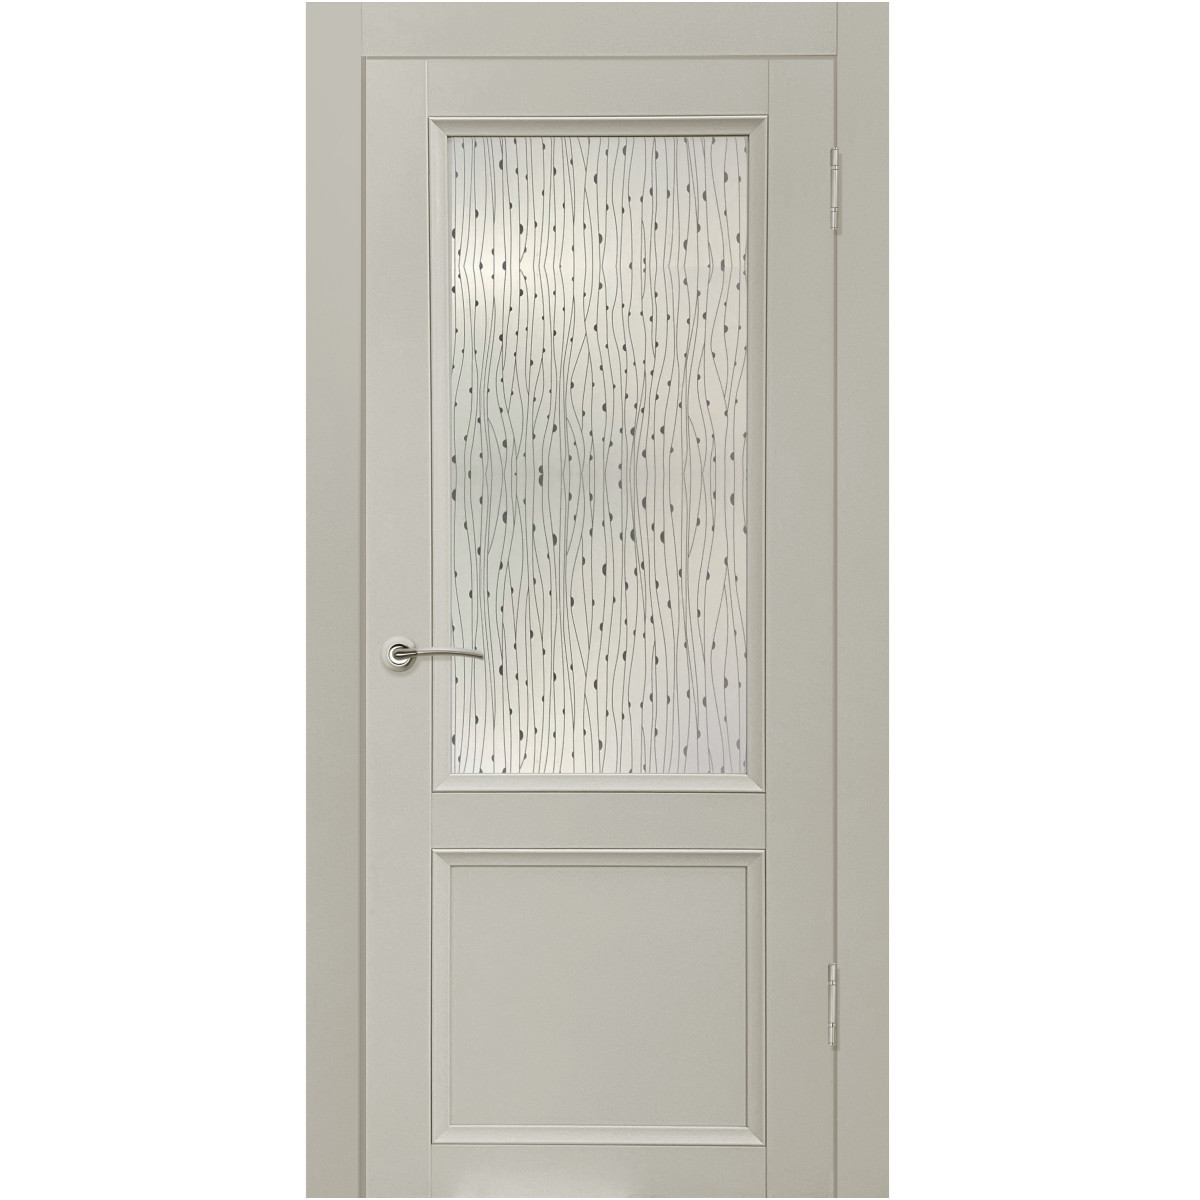 Дверь межкомнатная остеклённая с замком и петлями в комплекте Рондо 90x200 см Hardflex цвет серый жемчуг